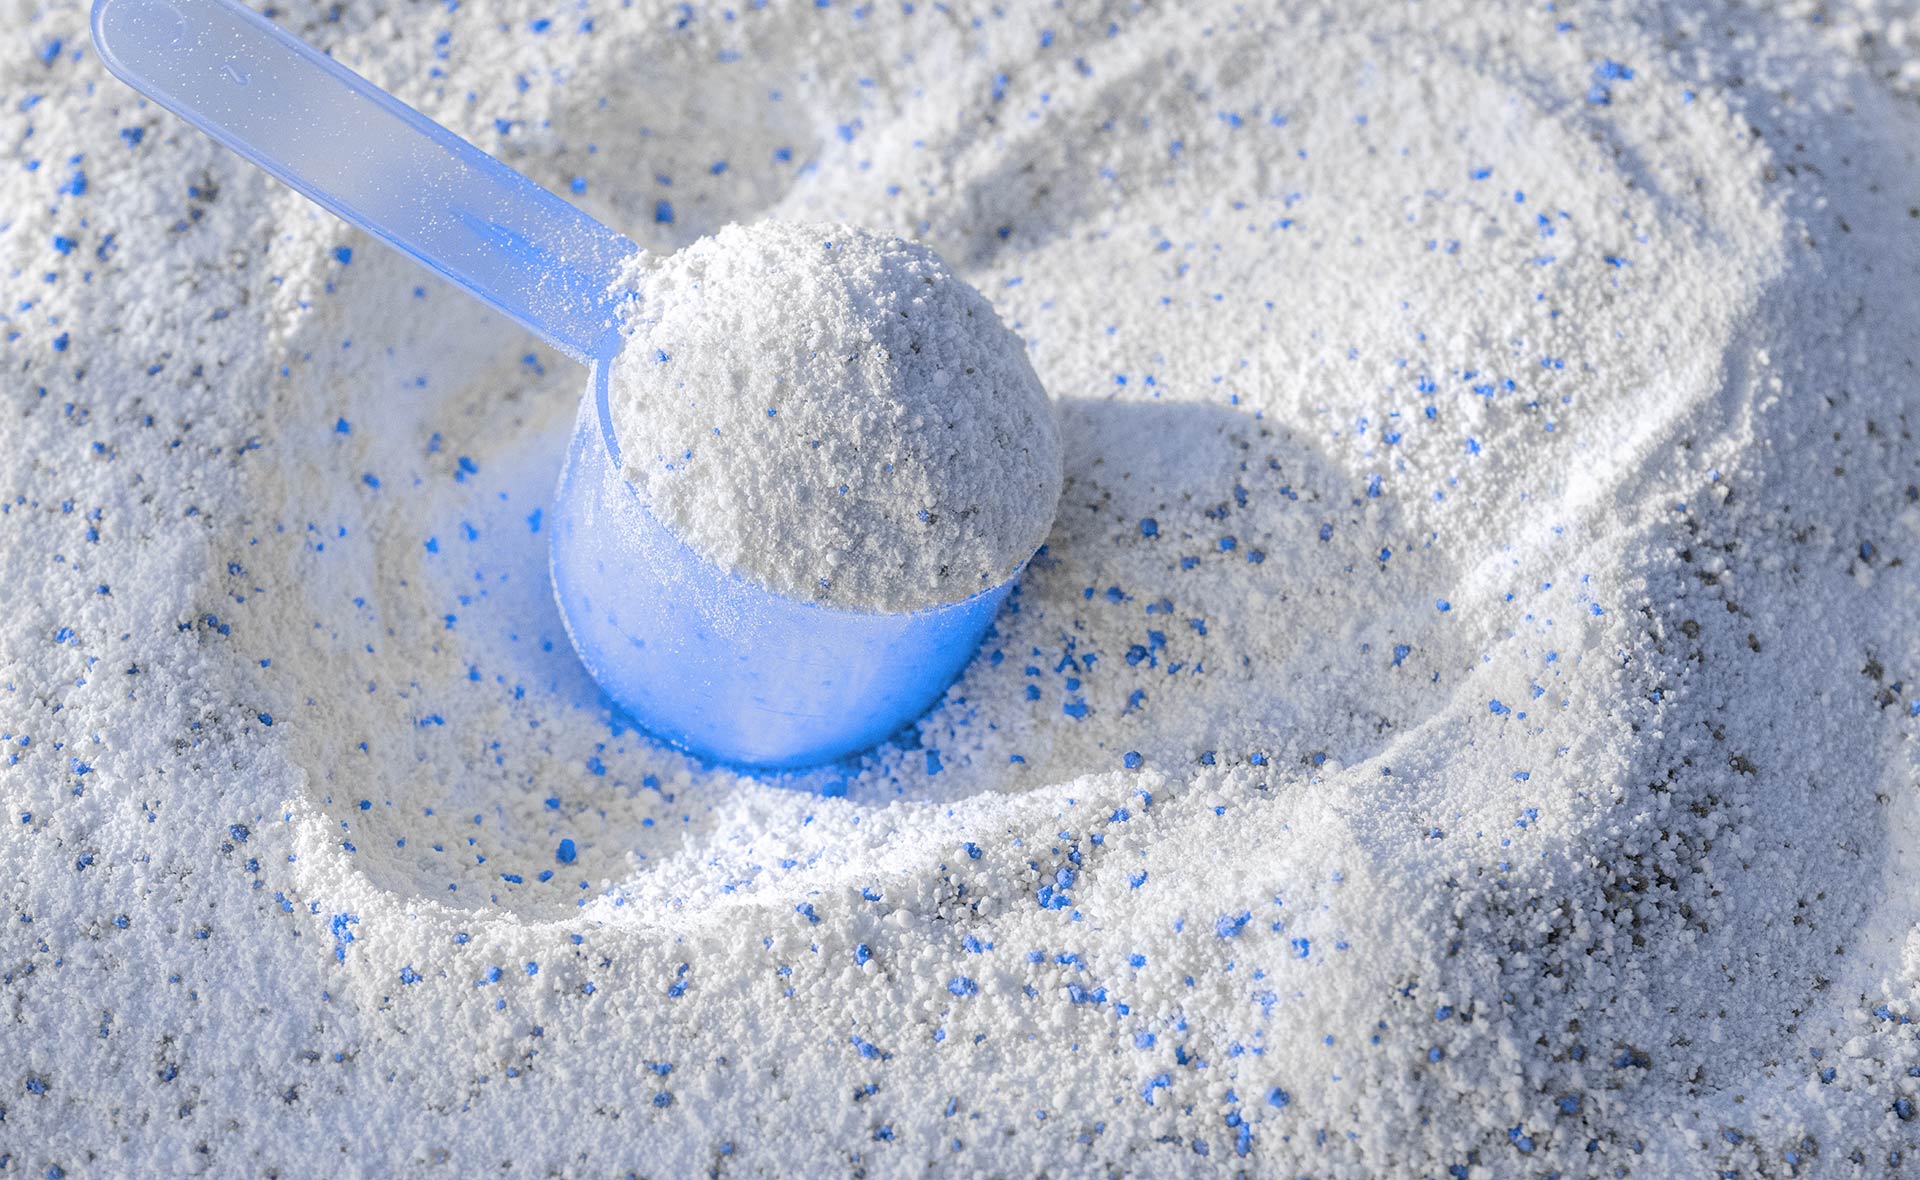 Cuáles son las diferencias entre el detergente líquido y en polvo?